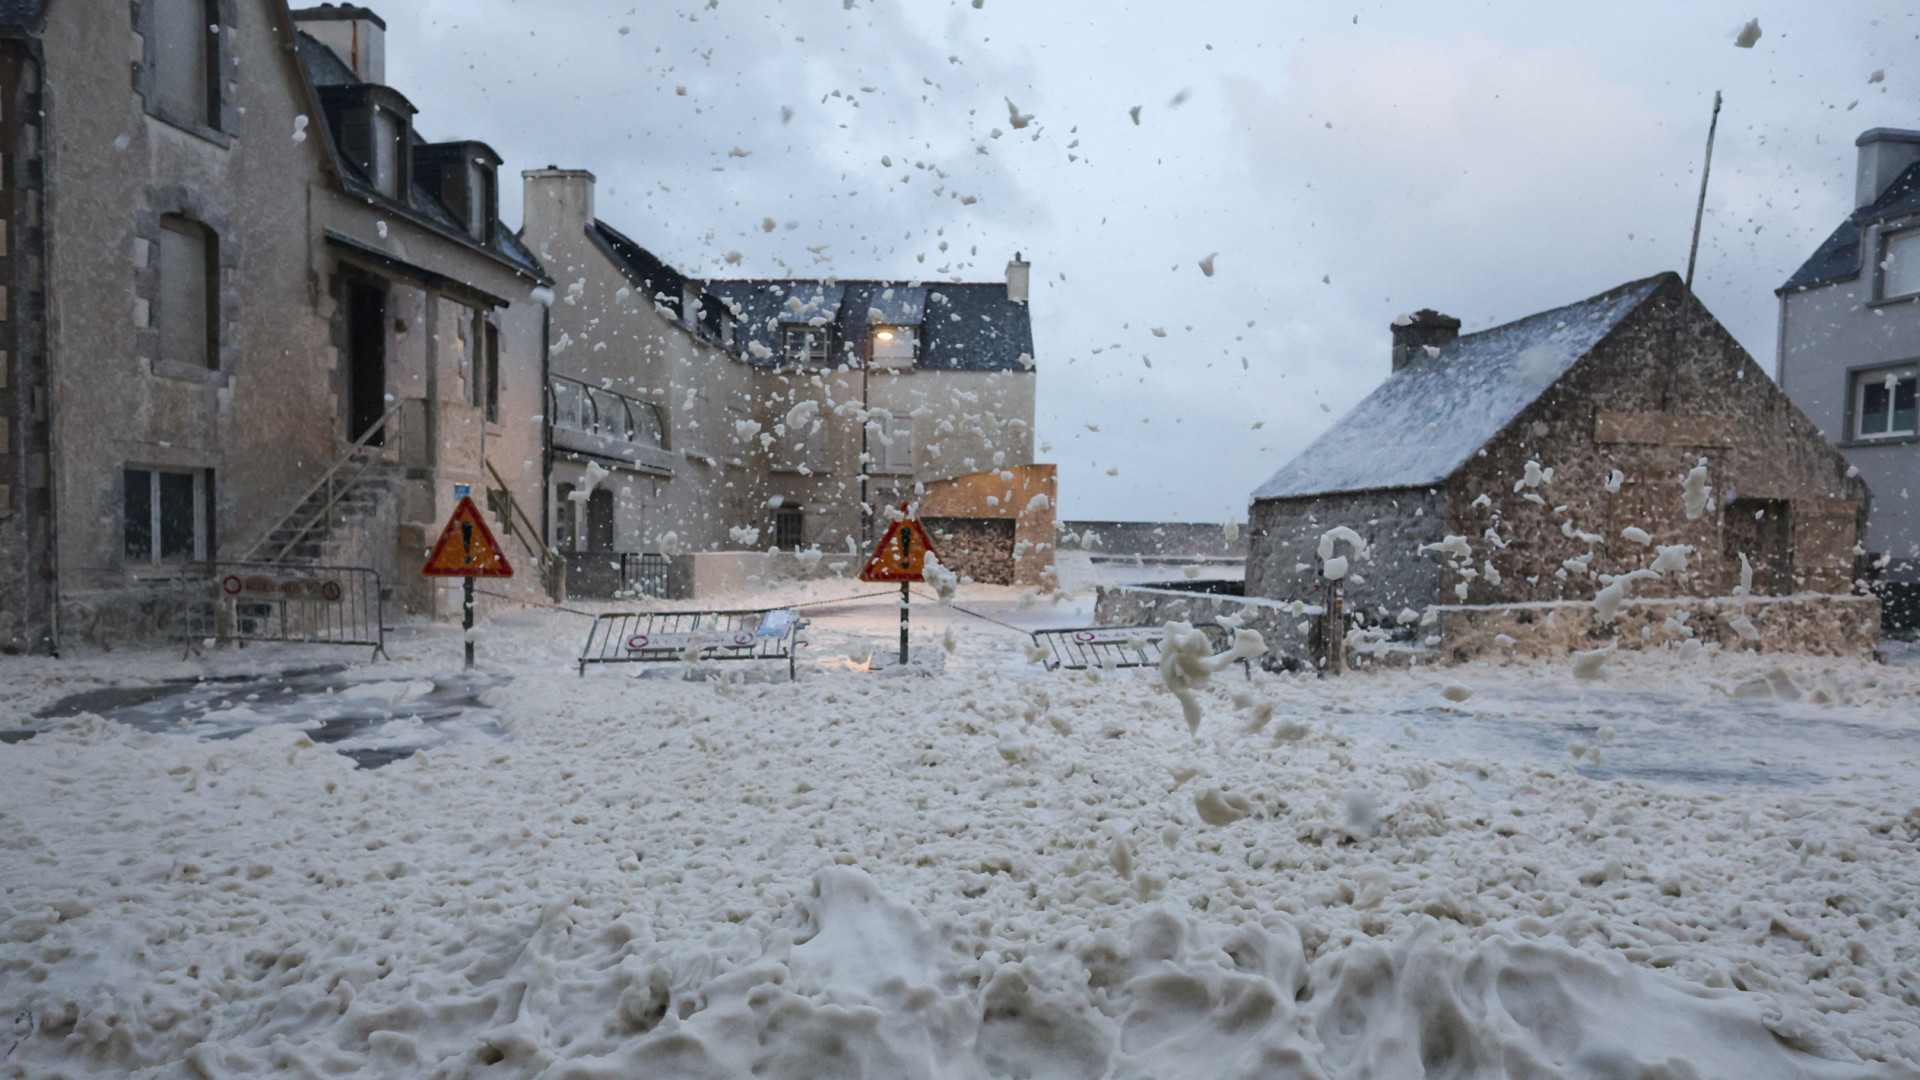 Pelo menos 5 mortos na Europa devido ao mau tempo. Portugal afetado